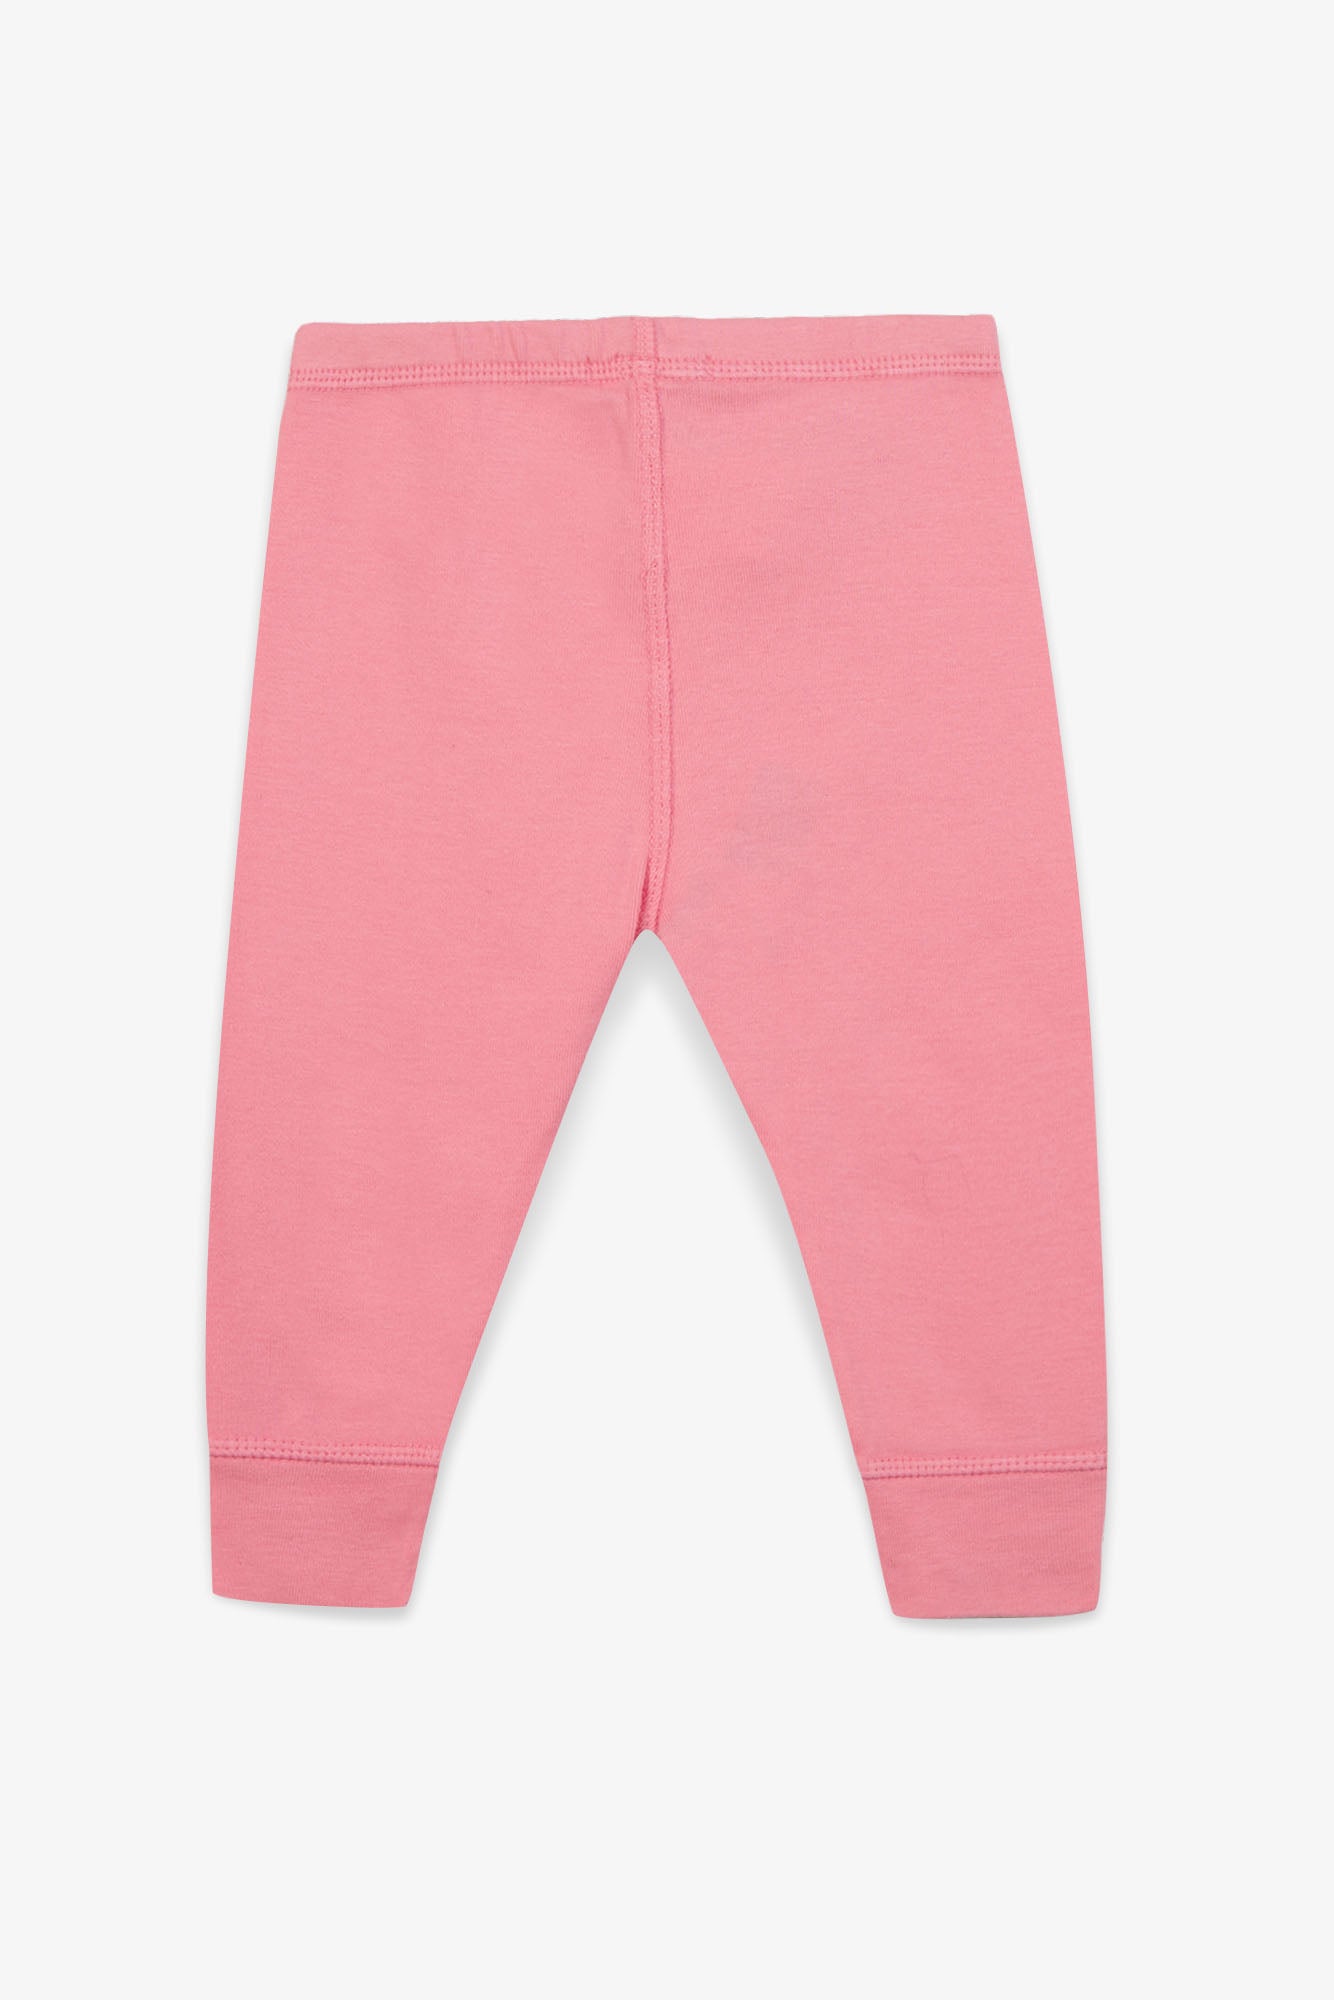 Legging - Tino Pink Baby organic cotton